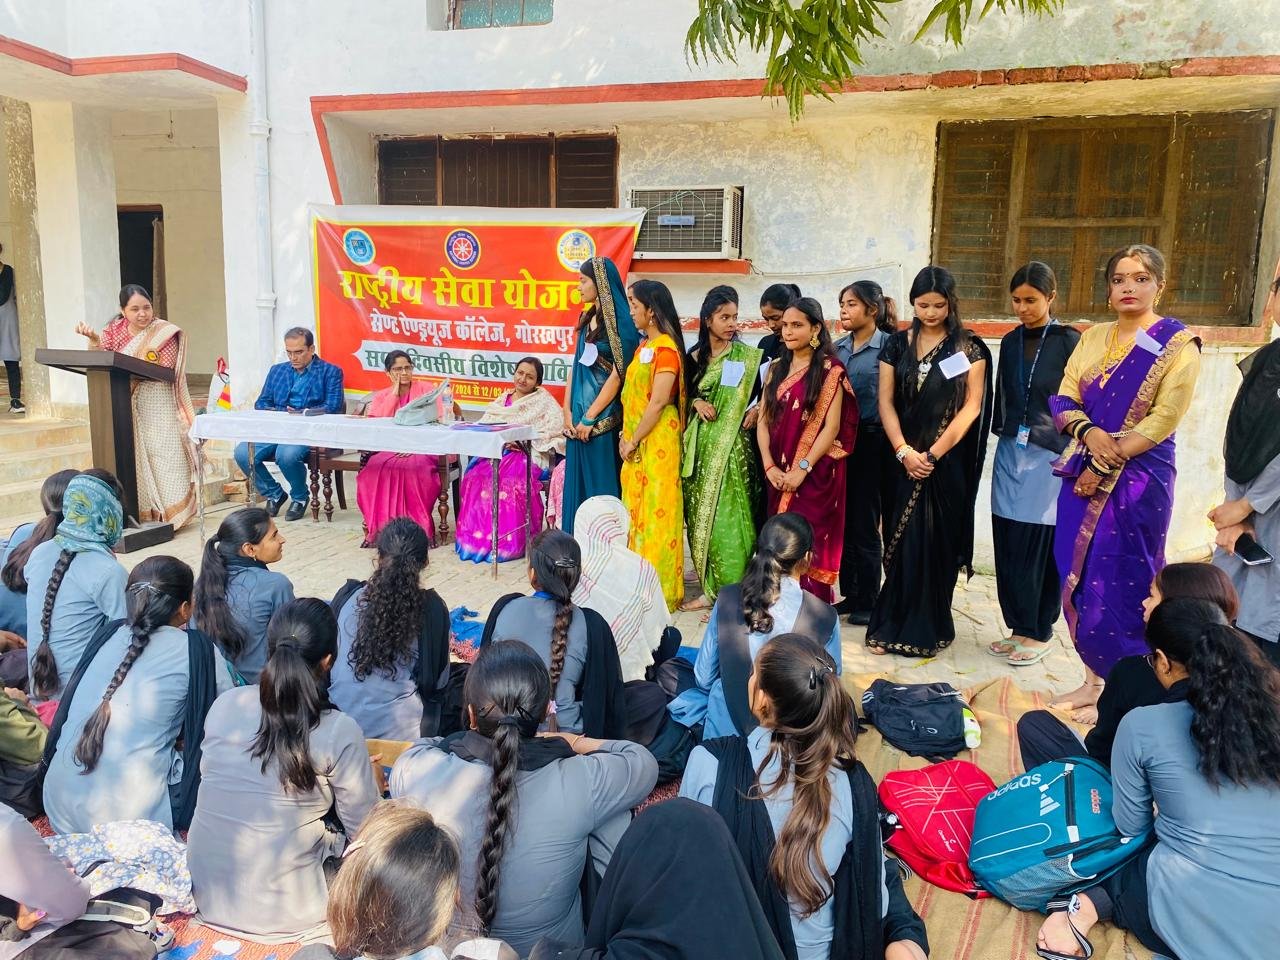 Gorakhpur- राष्ट्रीय सेवा योजना का सात दिवसीय विशेष शिविर, छठें दिन भाषण, ड्रैपिंग दी साड़ी प्रतियोगिता व पाँचवा आउटरीच कैंप का हुआ आयोजन